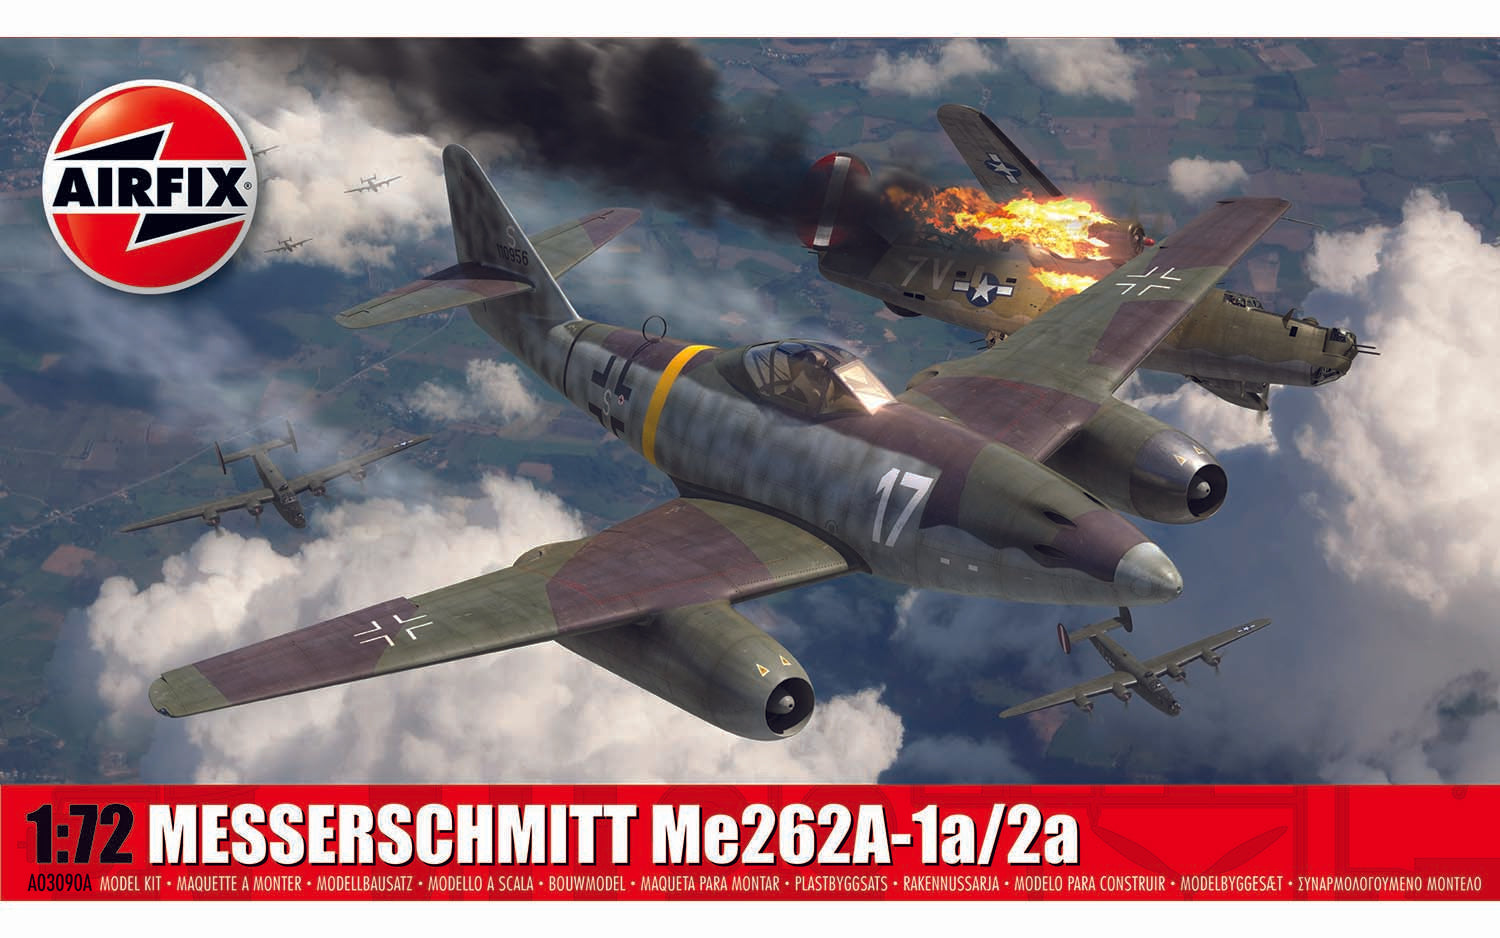 Airfix A03090A Messerschmitt Me262A-1a/2a 1/72 Scale Model Kit